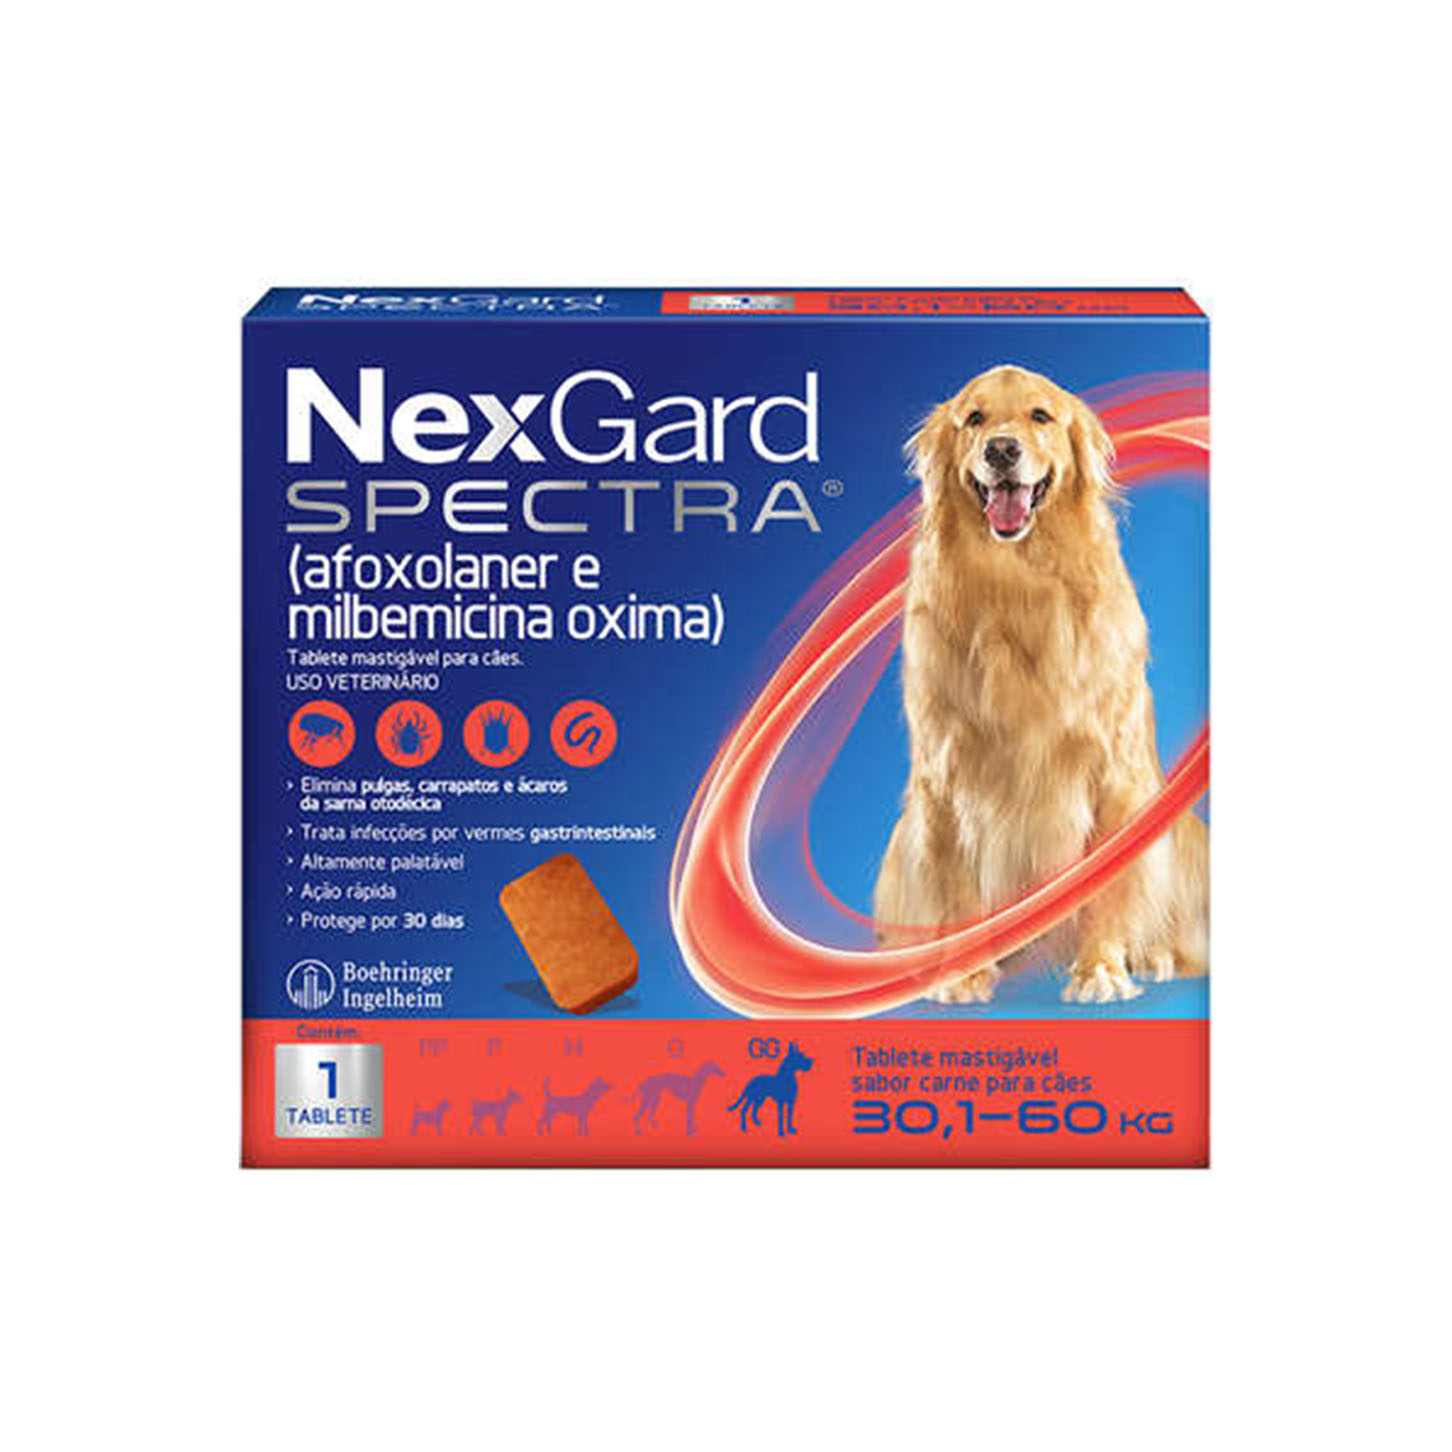 Nexgard Spectra para Cães de 30,1 a 60Kg 1 Comprimido Boehringer Ingelheim